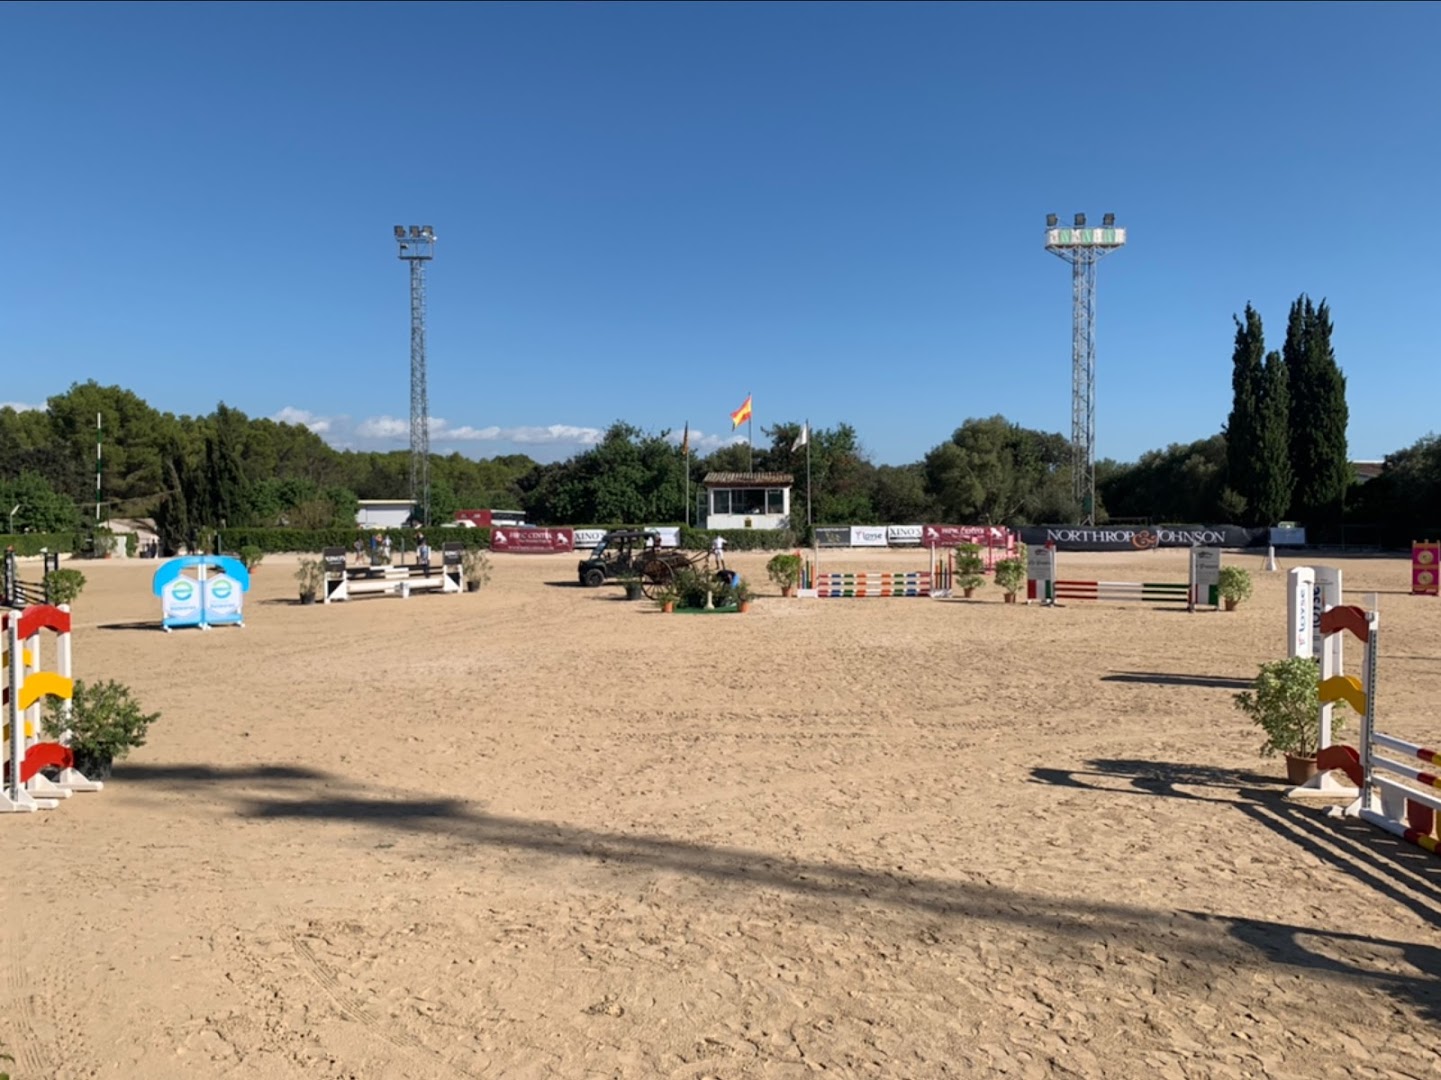 Real Club Escuela Equitación de Mallorca (RCEEM)